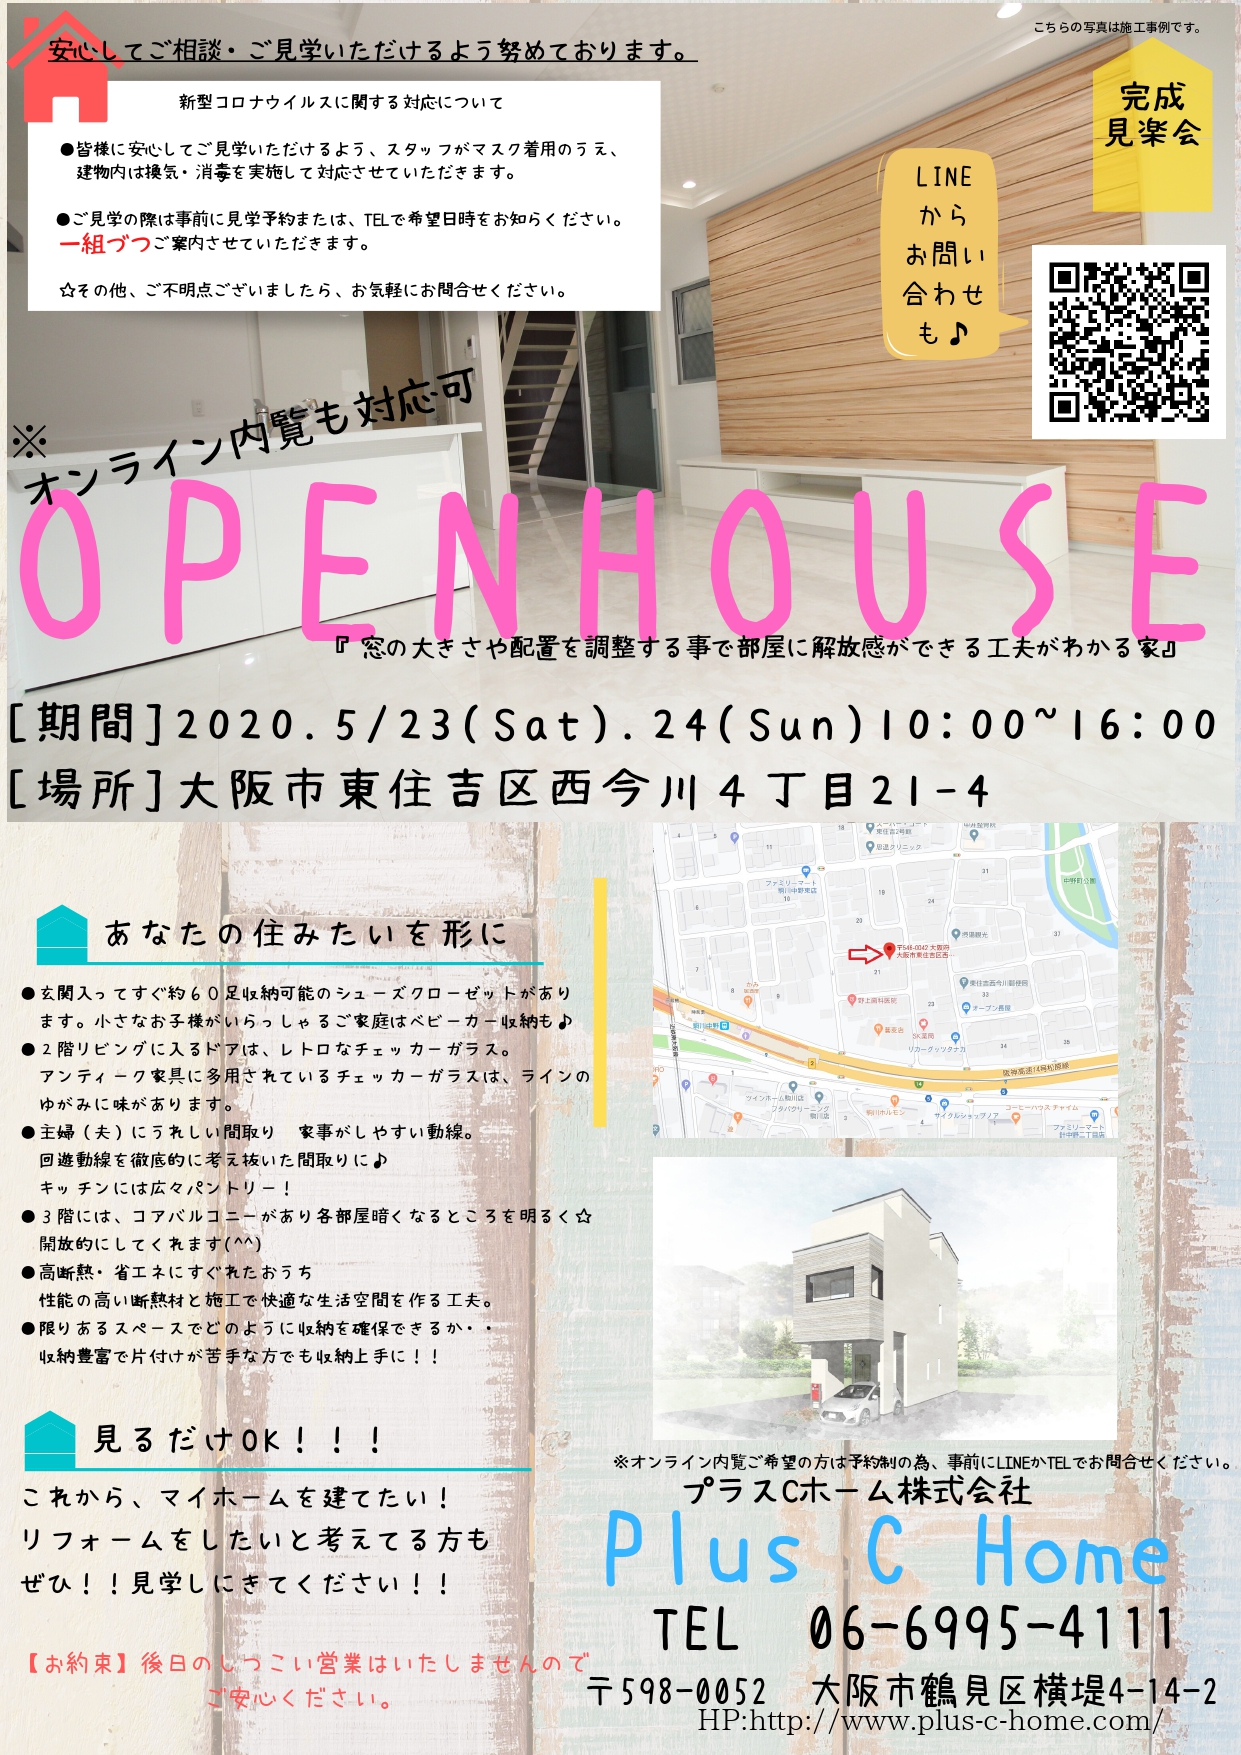 大阪市東住吉区西今川に大阪注文住宅工務店Plus C Homeがプロデュースしたモデルハウスの完成内覧会です♪